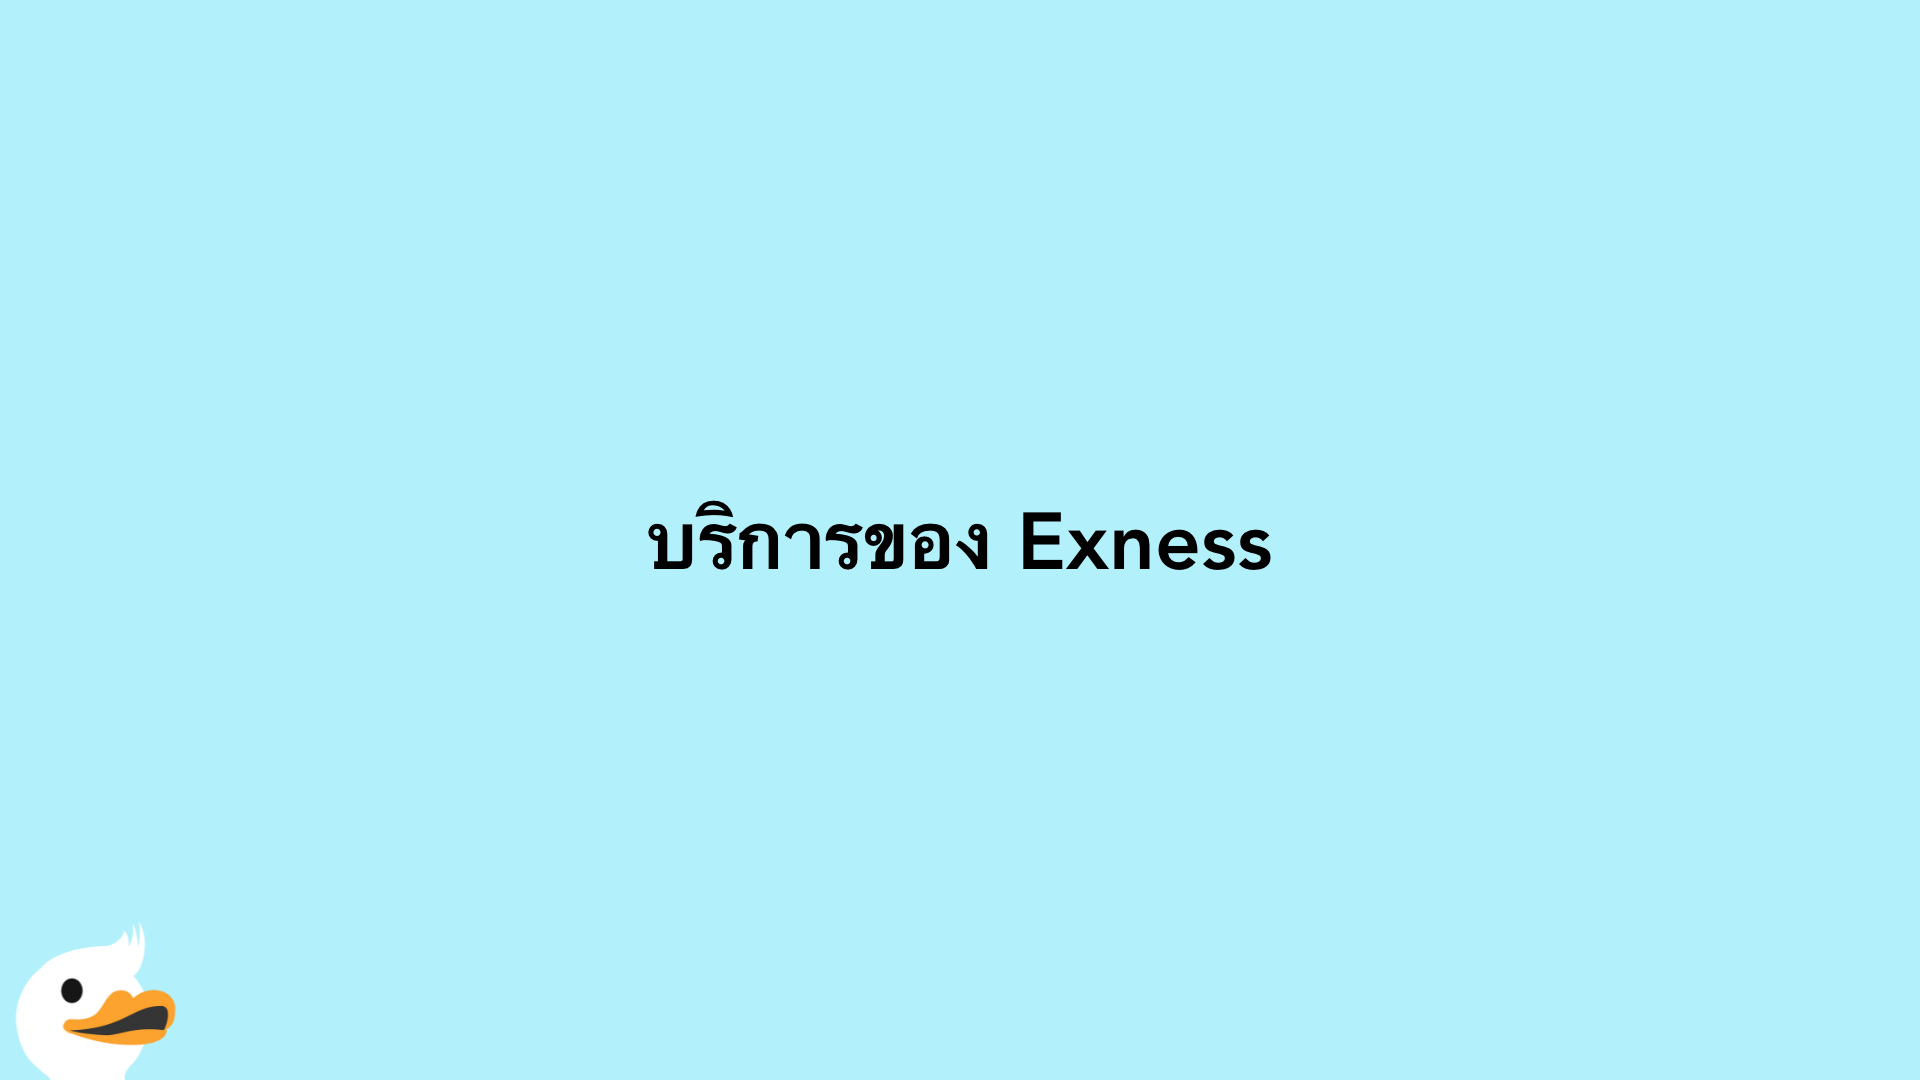 บริการของ Exness